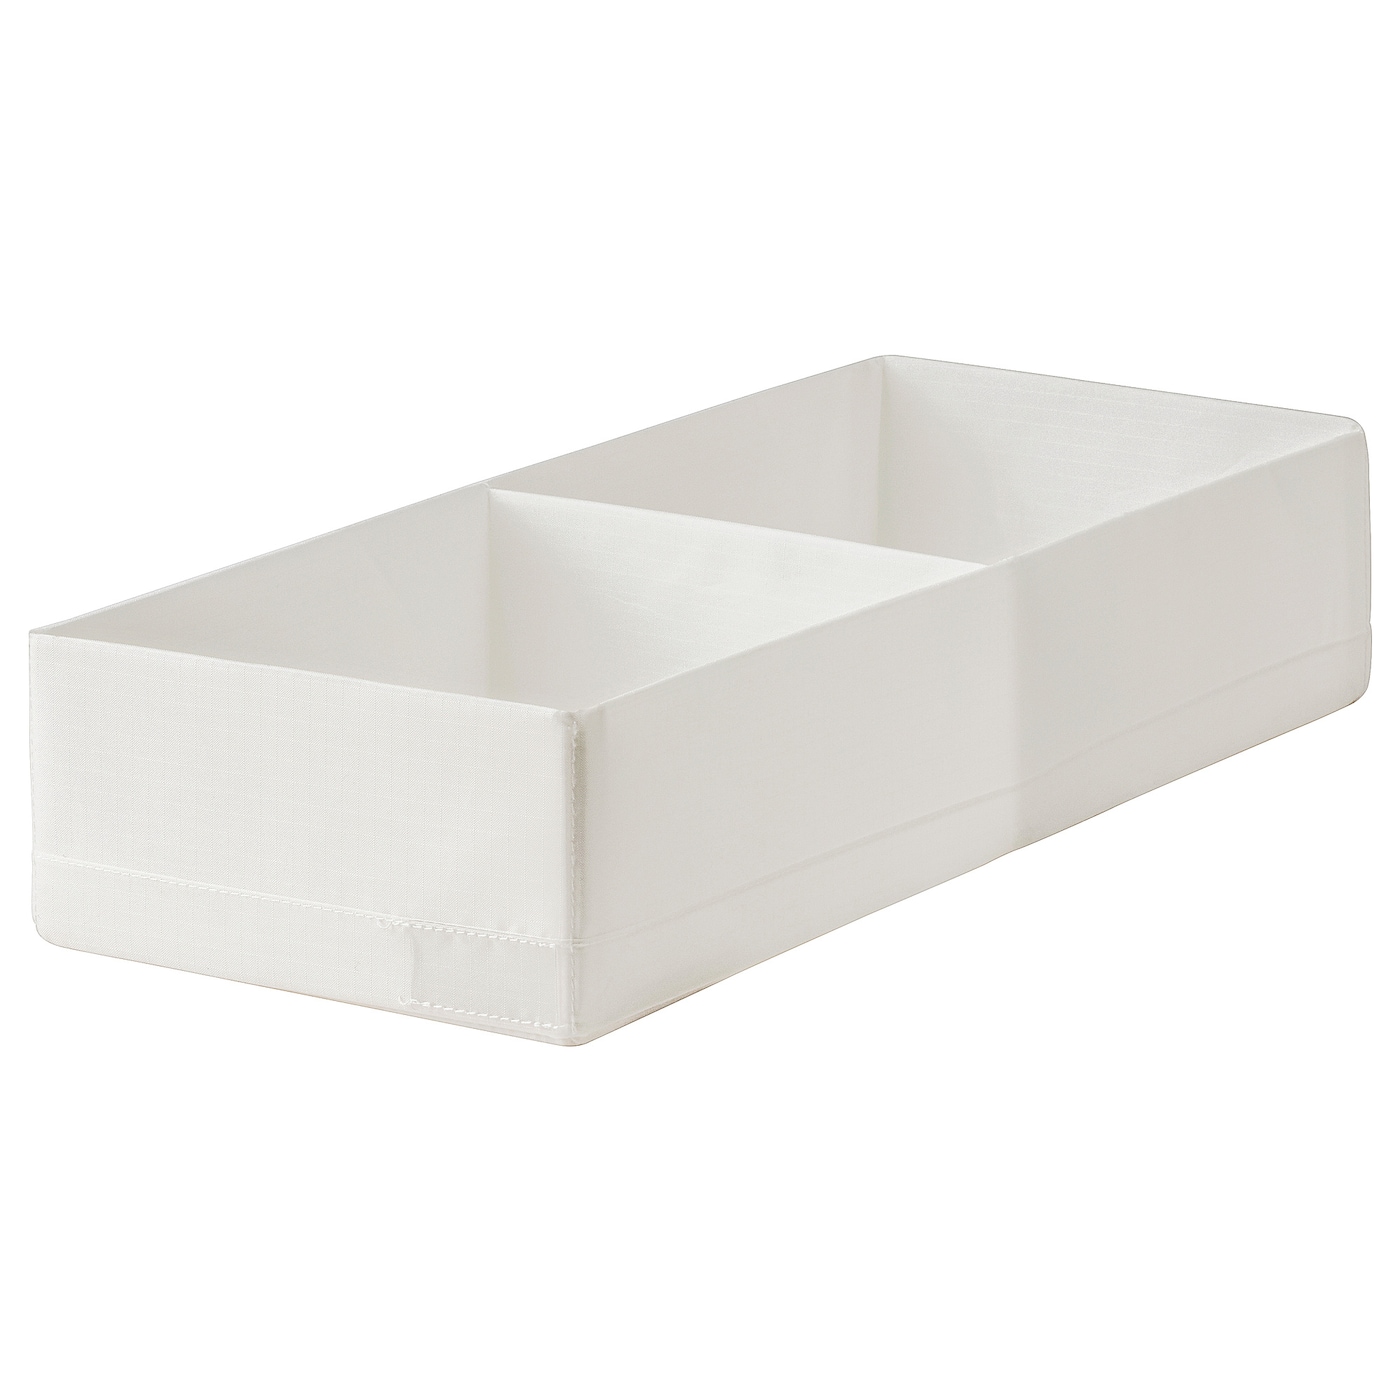 STUK СТУК Ящик с отделениями, белый, 20x51x10 см IKEA stuk стук органайзер белый 26x20x6 см ikea